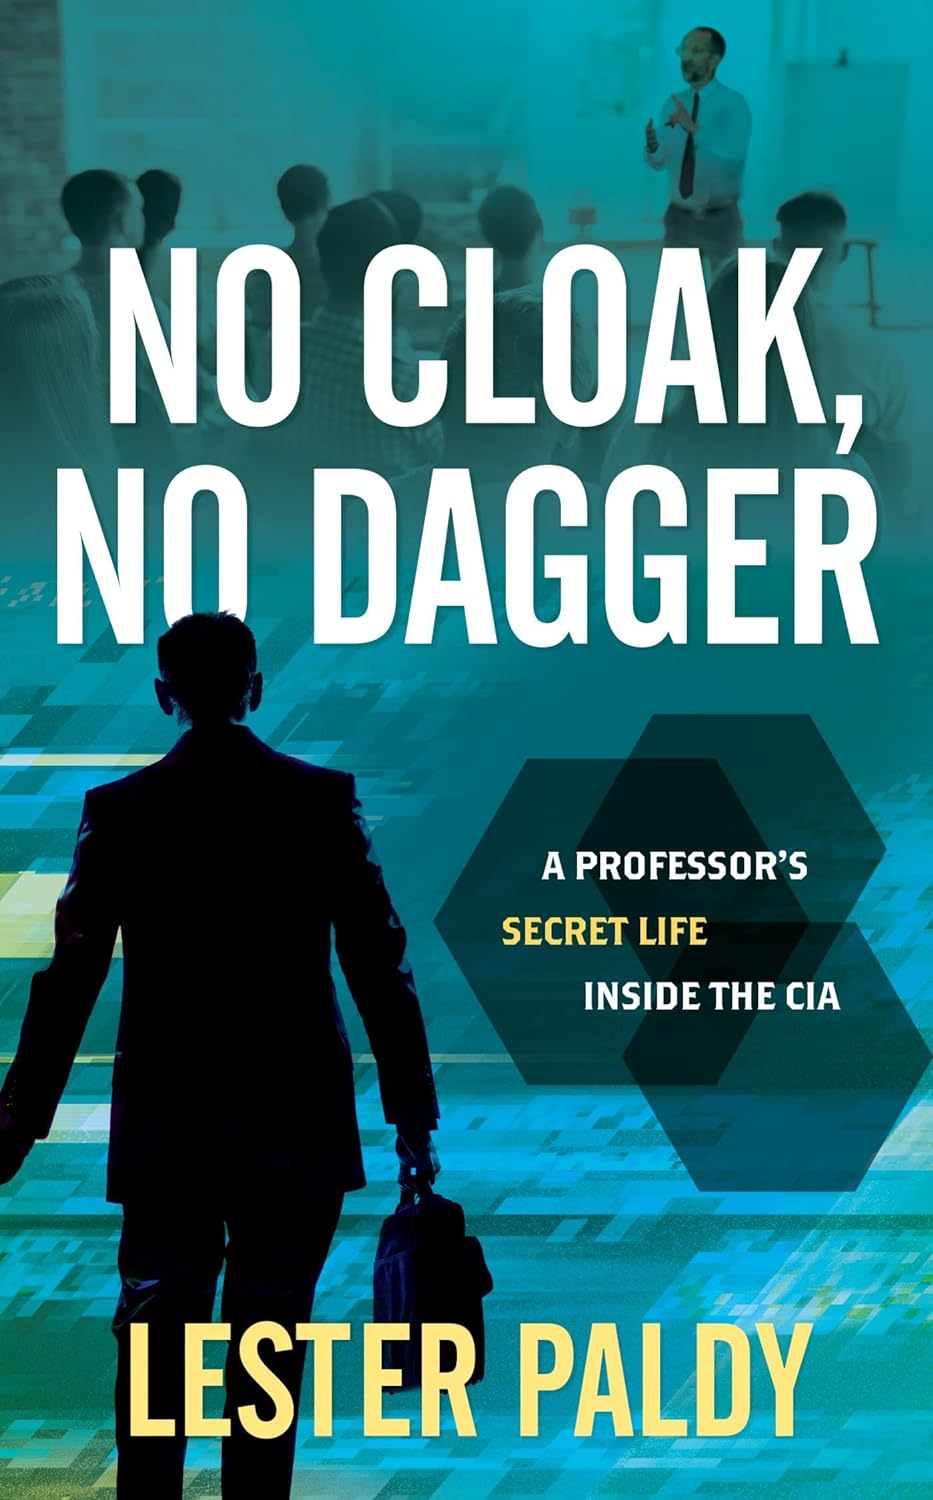 Cover of the book "No Cloak, No Dagger: A Professor’s Secret Life Inside the CIA"